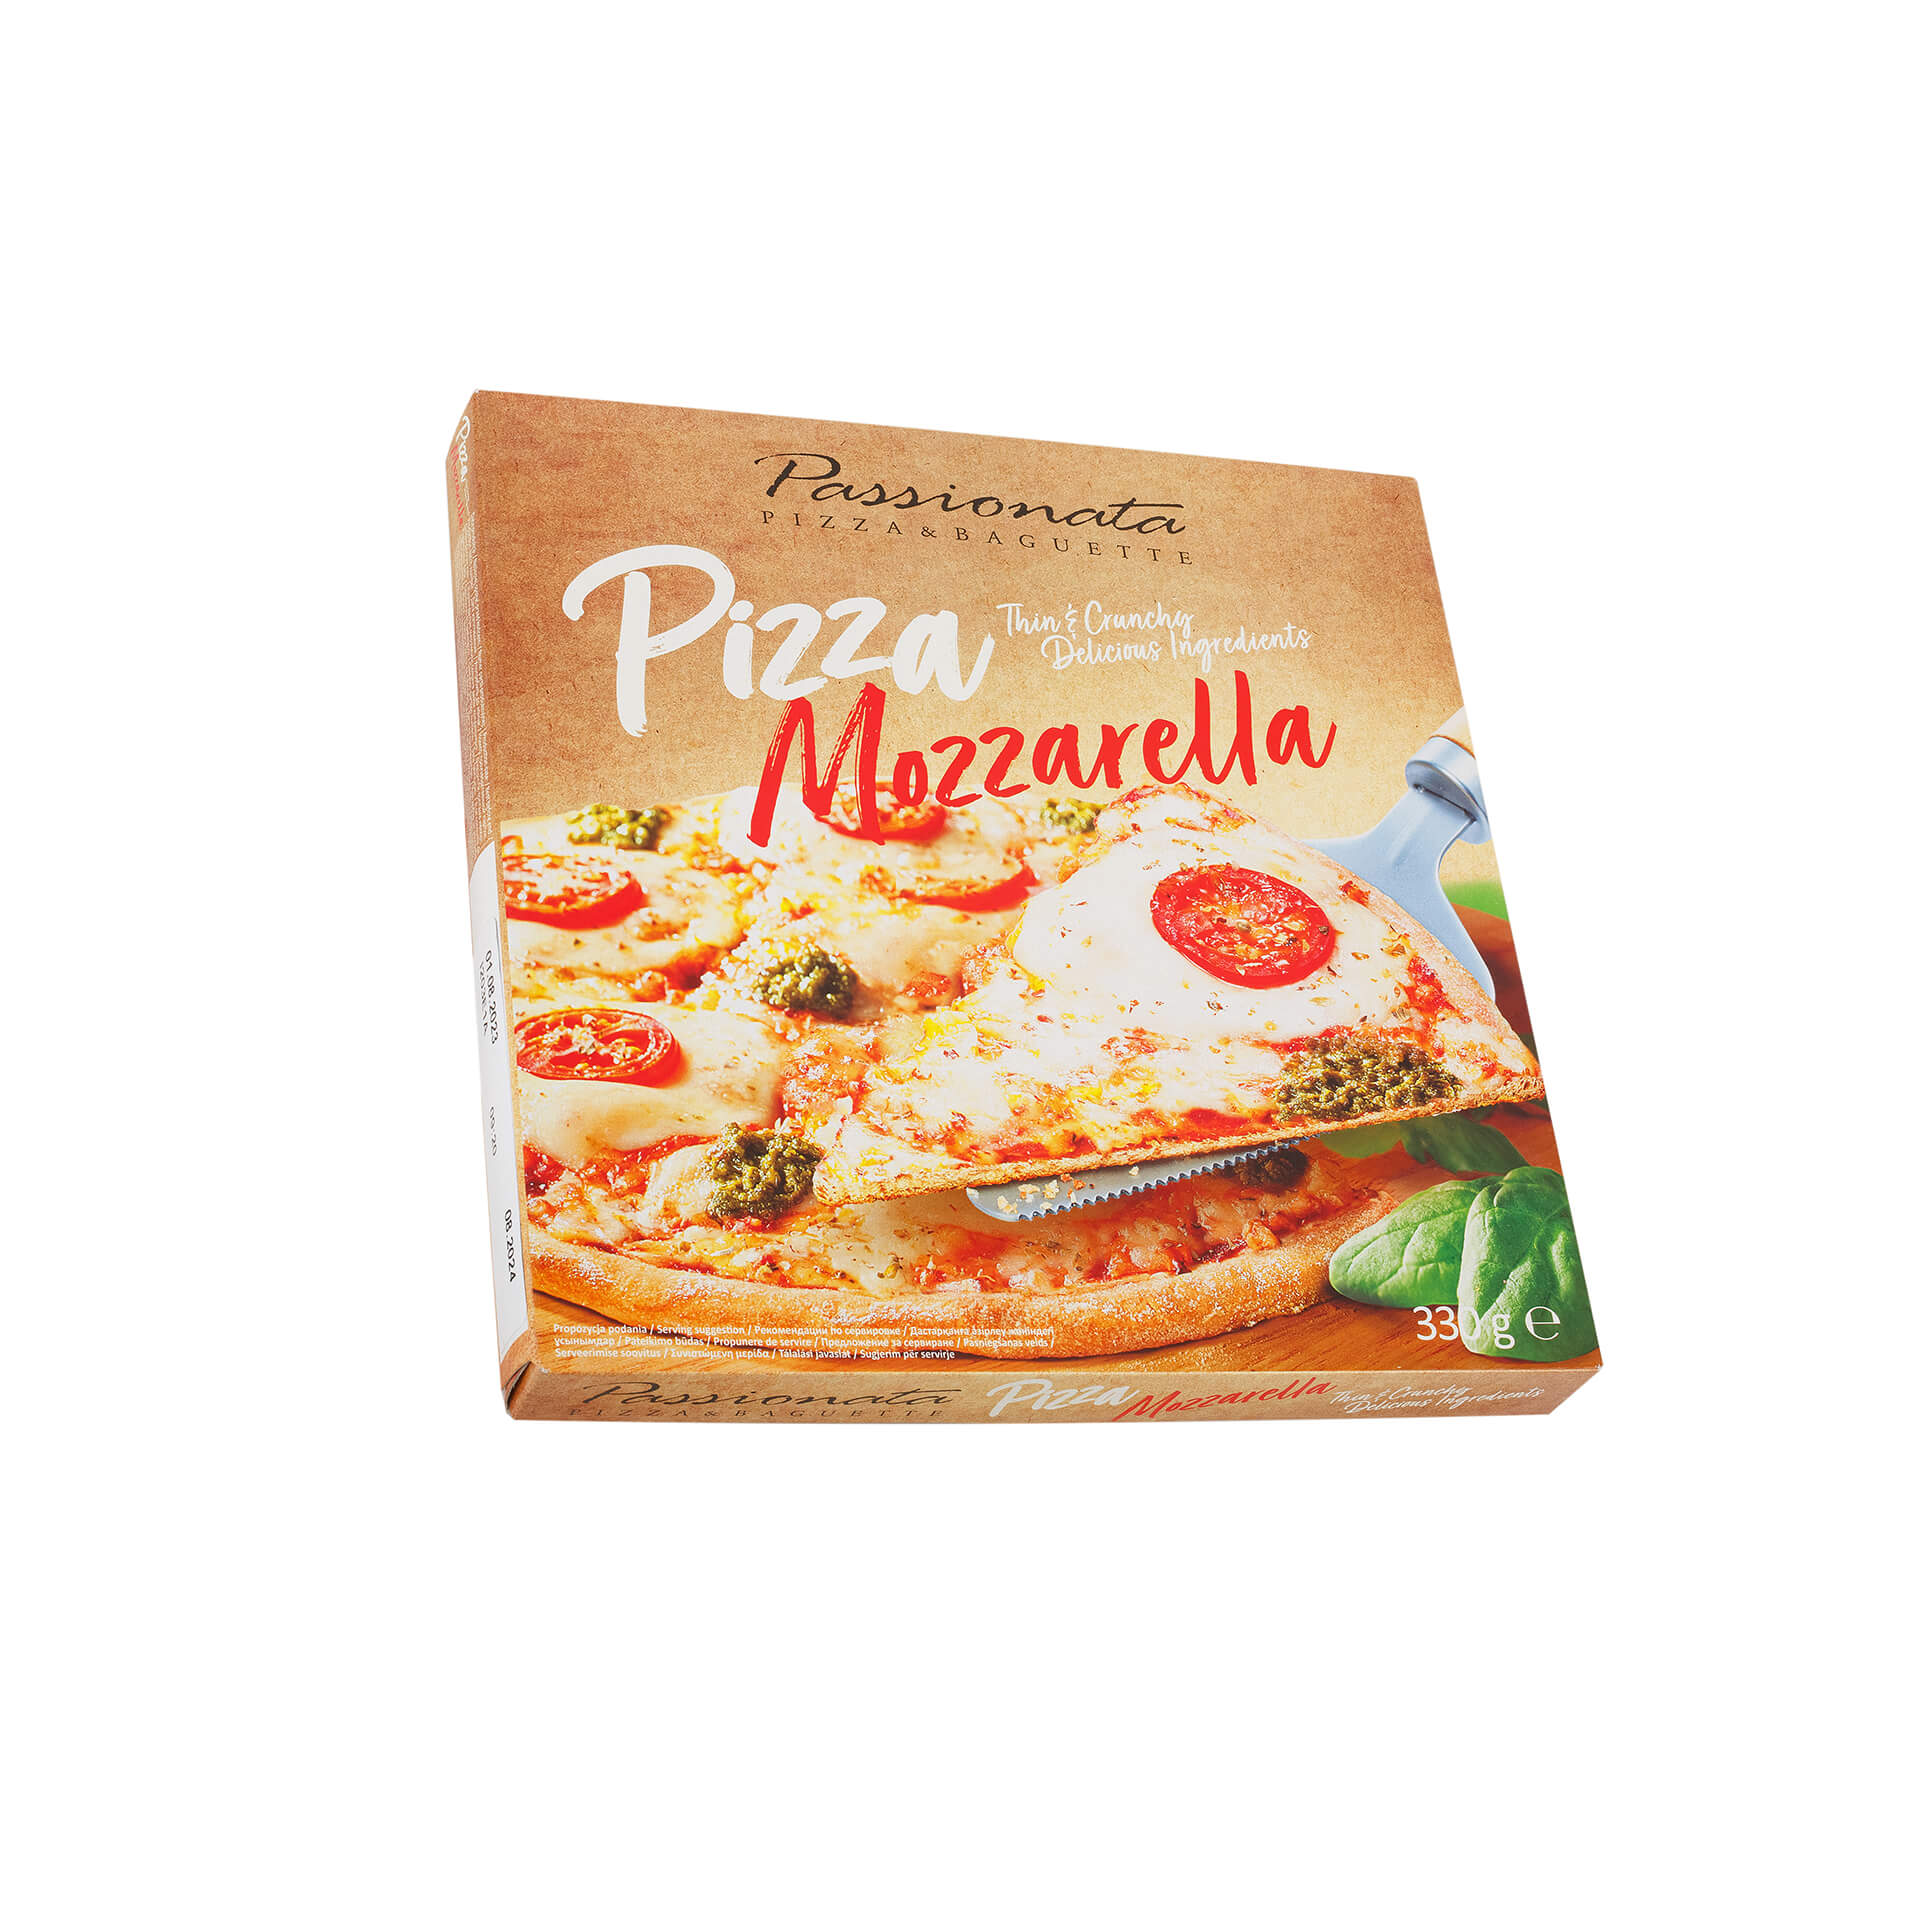 Пицца "Моцарелла" замороженный полуфабрикат Passionata 330 г 8543LED, общий вид, купить оптом с доставкой по москве и московской области, недорого, низкая цена